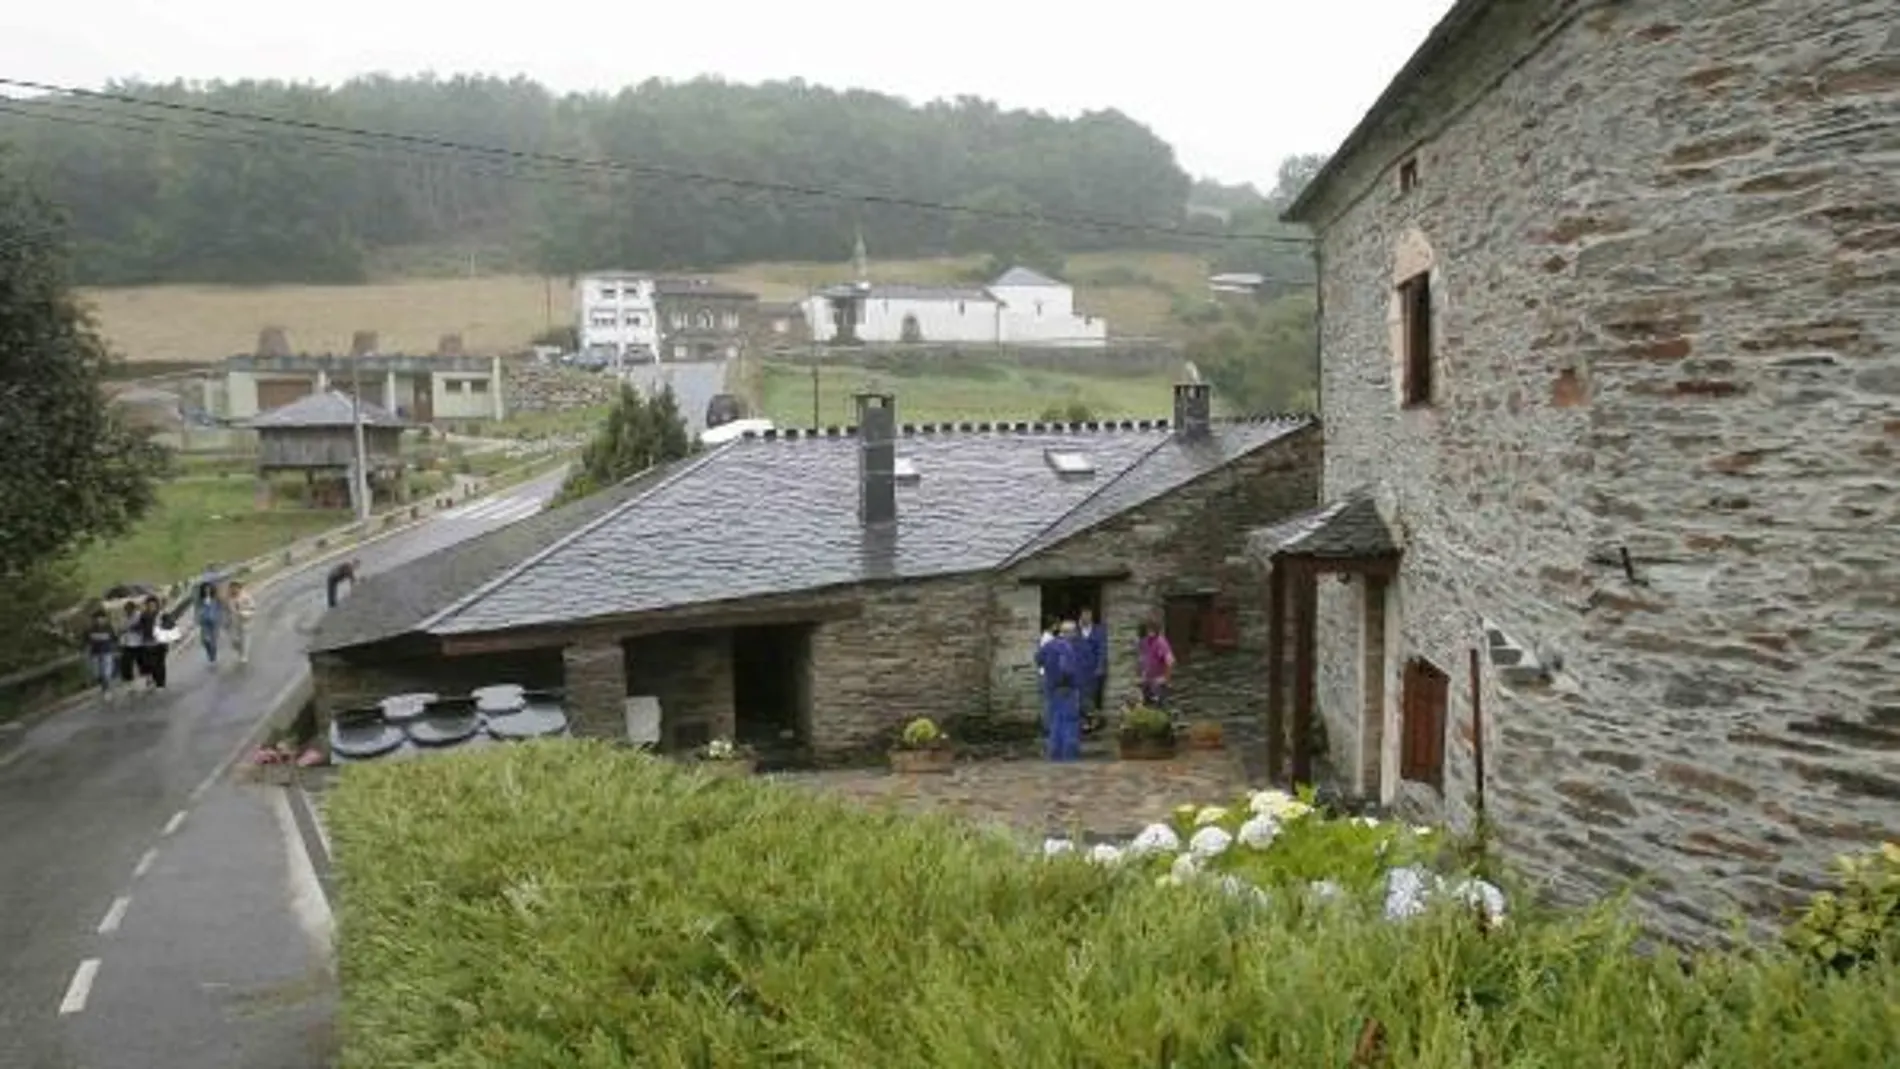 Imagen de una casa rural en Asturias